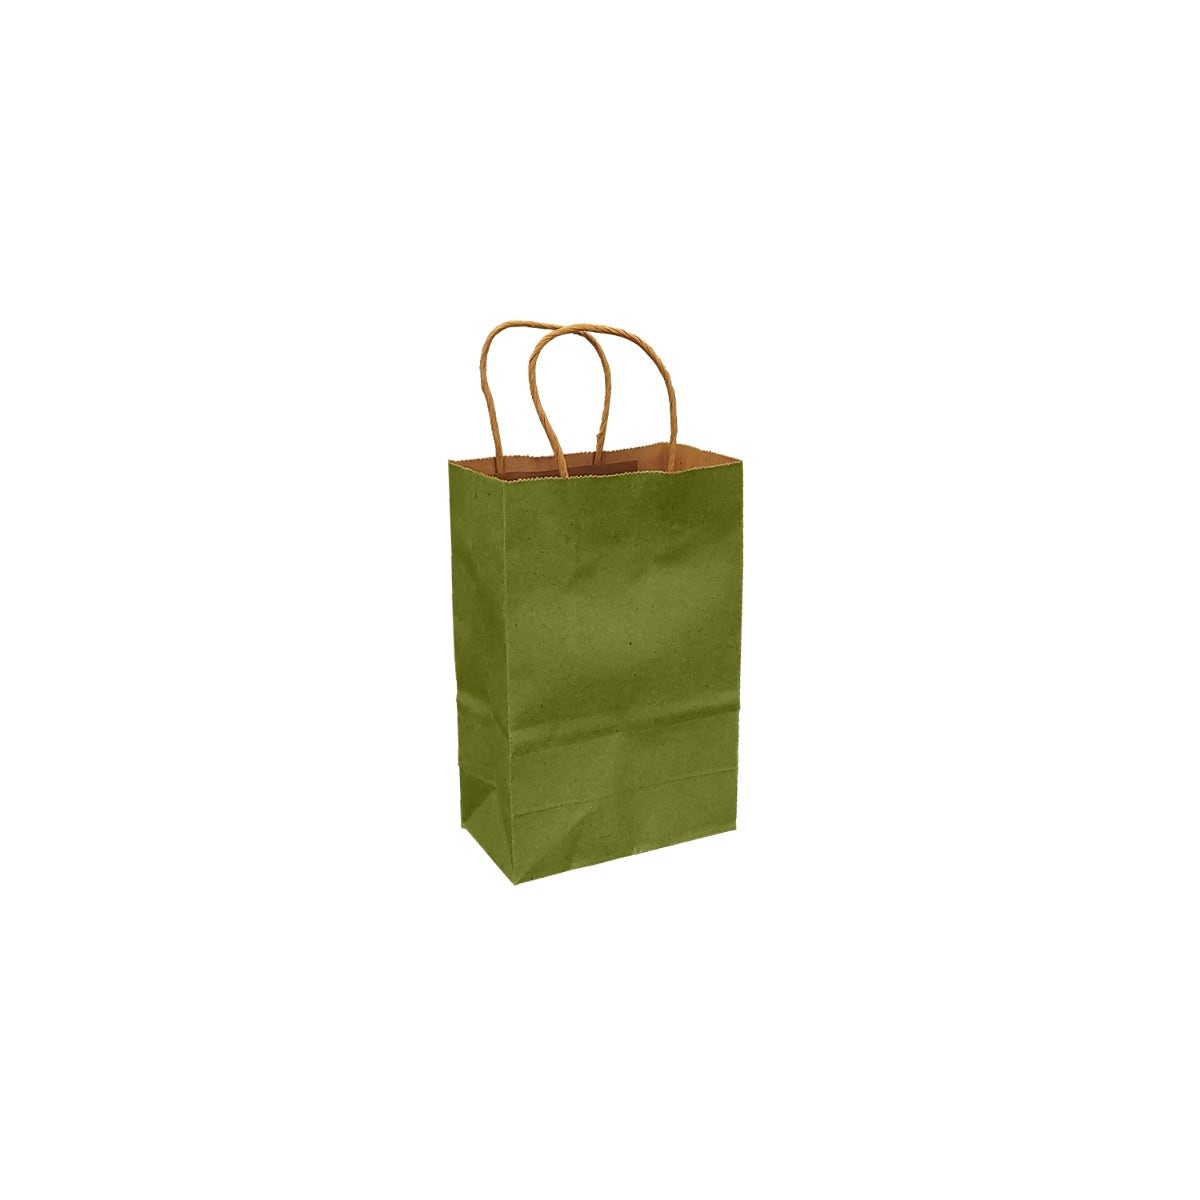 Leaf Green 100% Recycled Kraft Paper Bags With Handles - Eddie's Hang-Up Display Ltd.